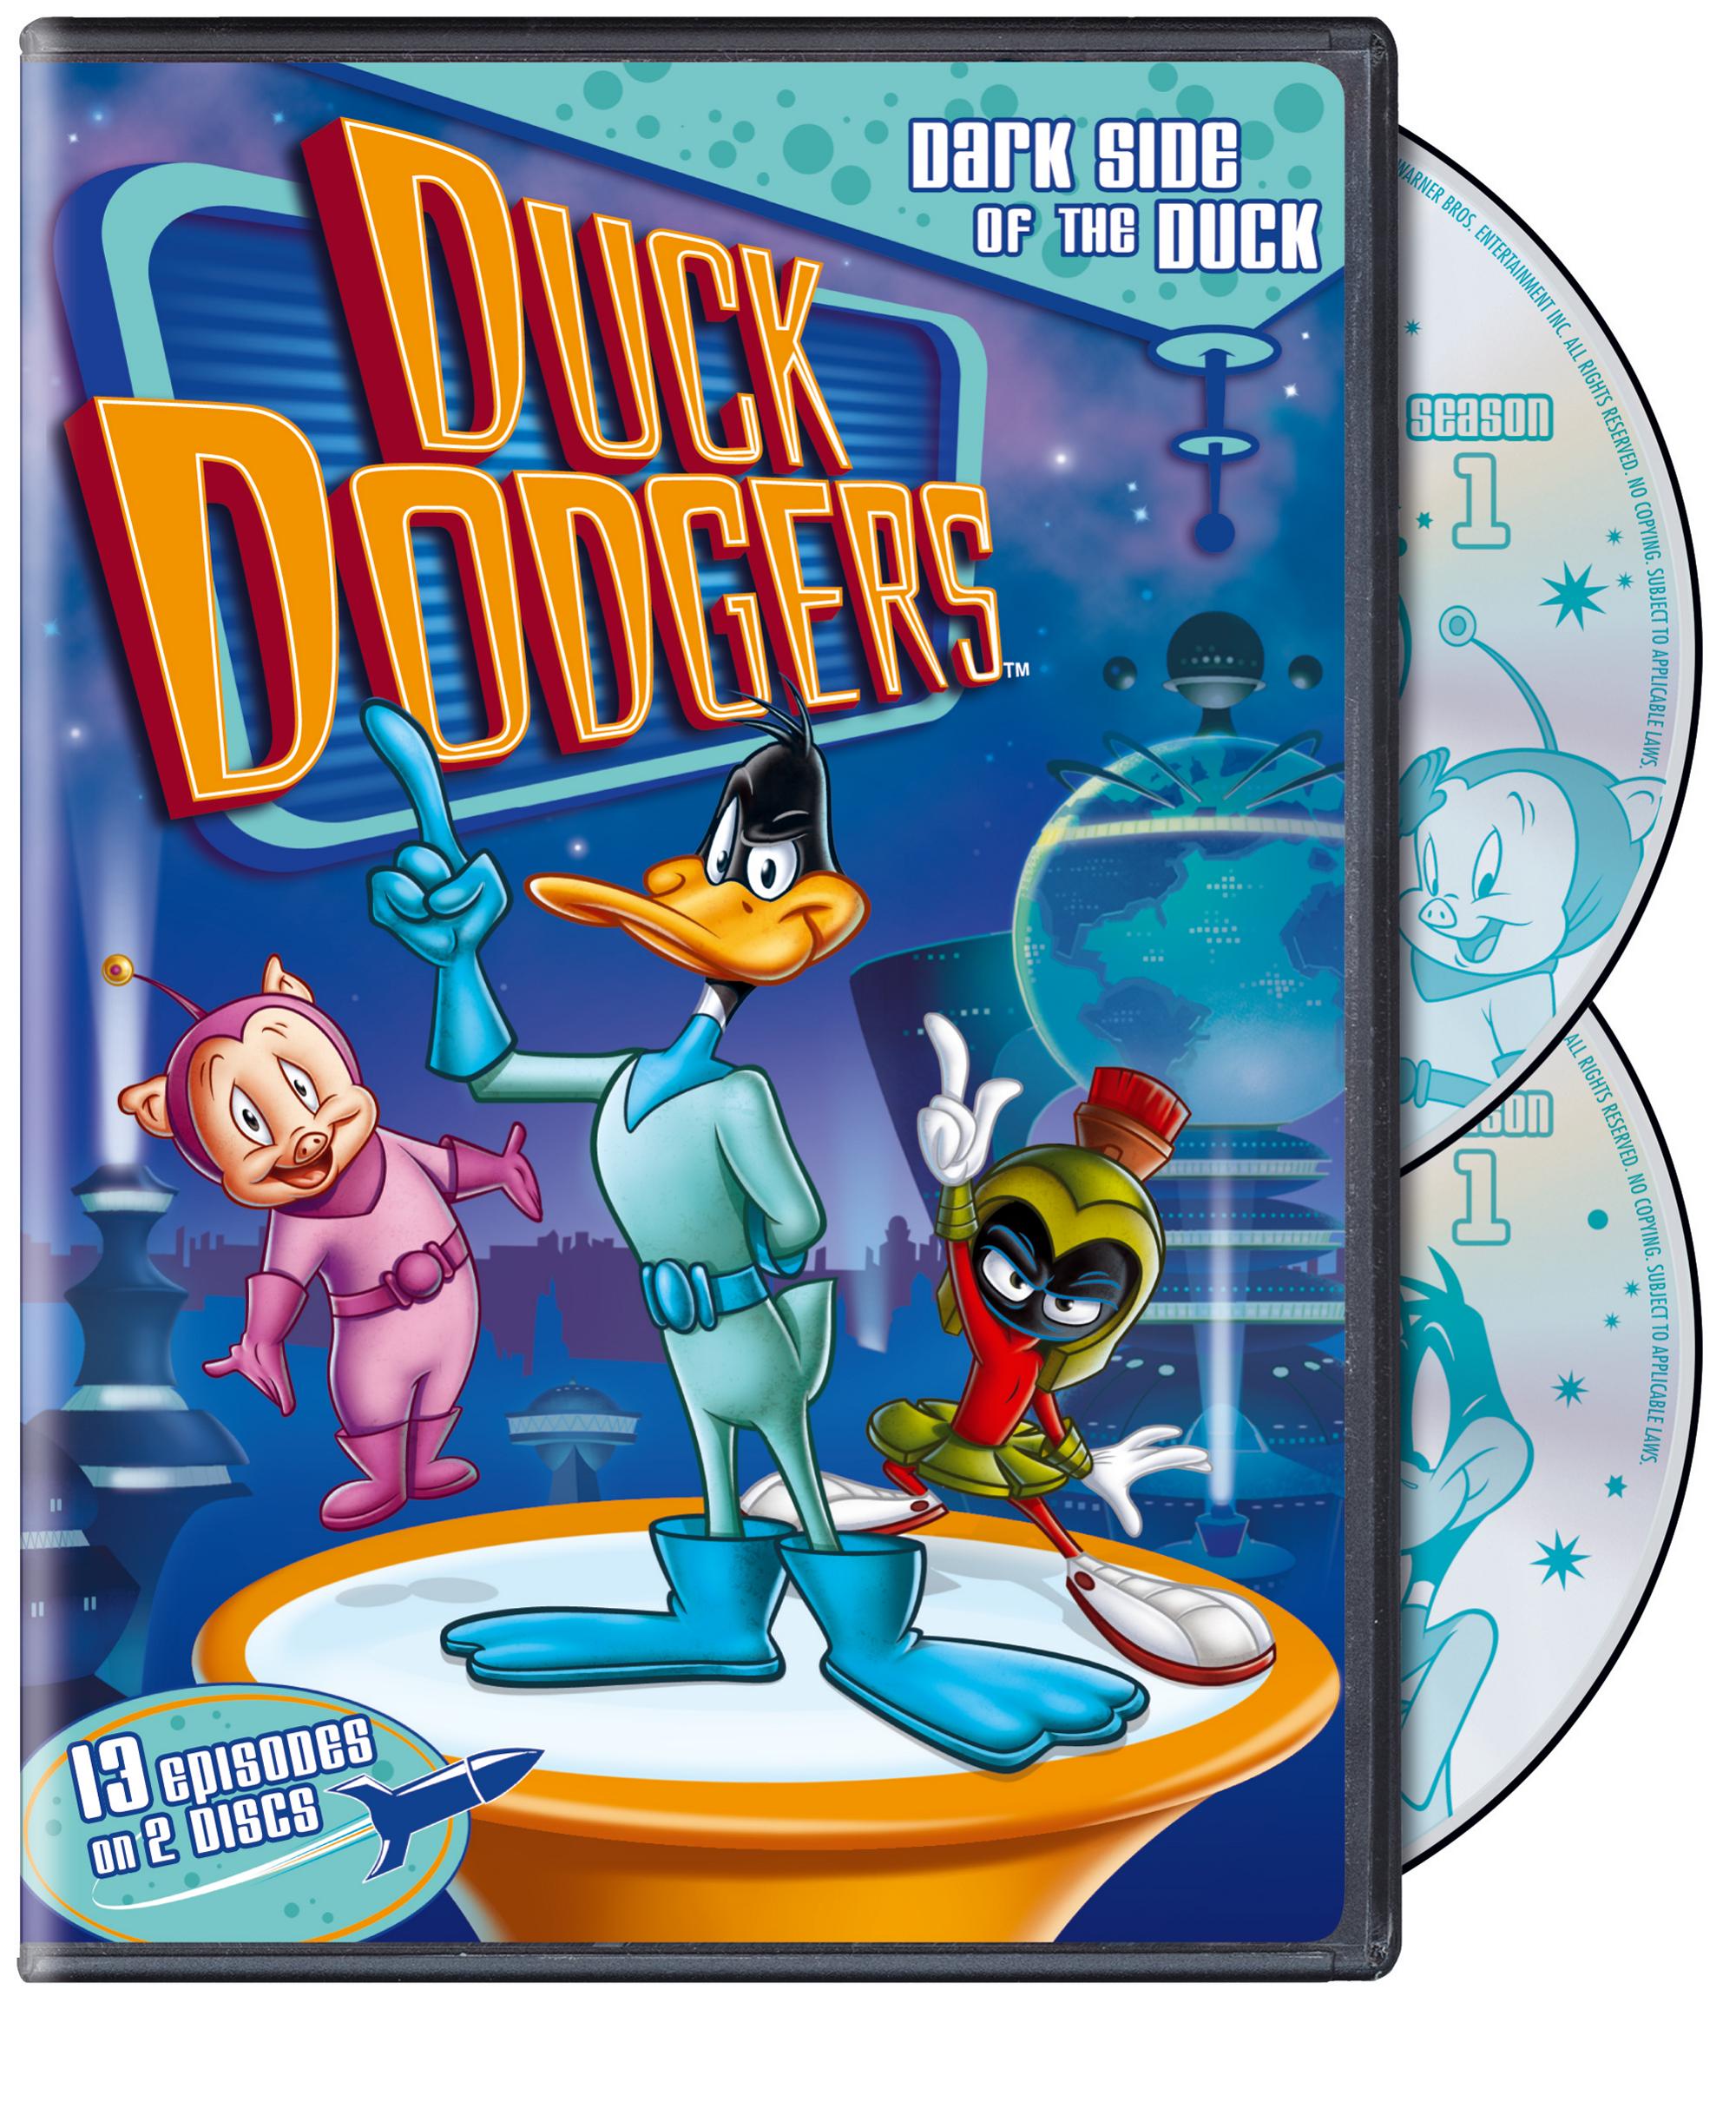 Duck Dodgers Dark Side of the Duck